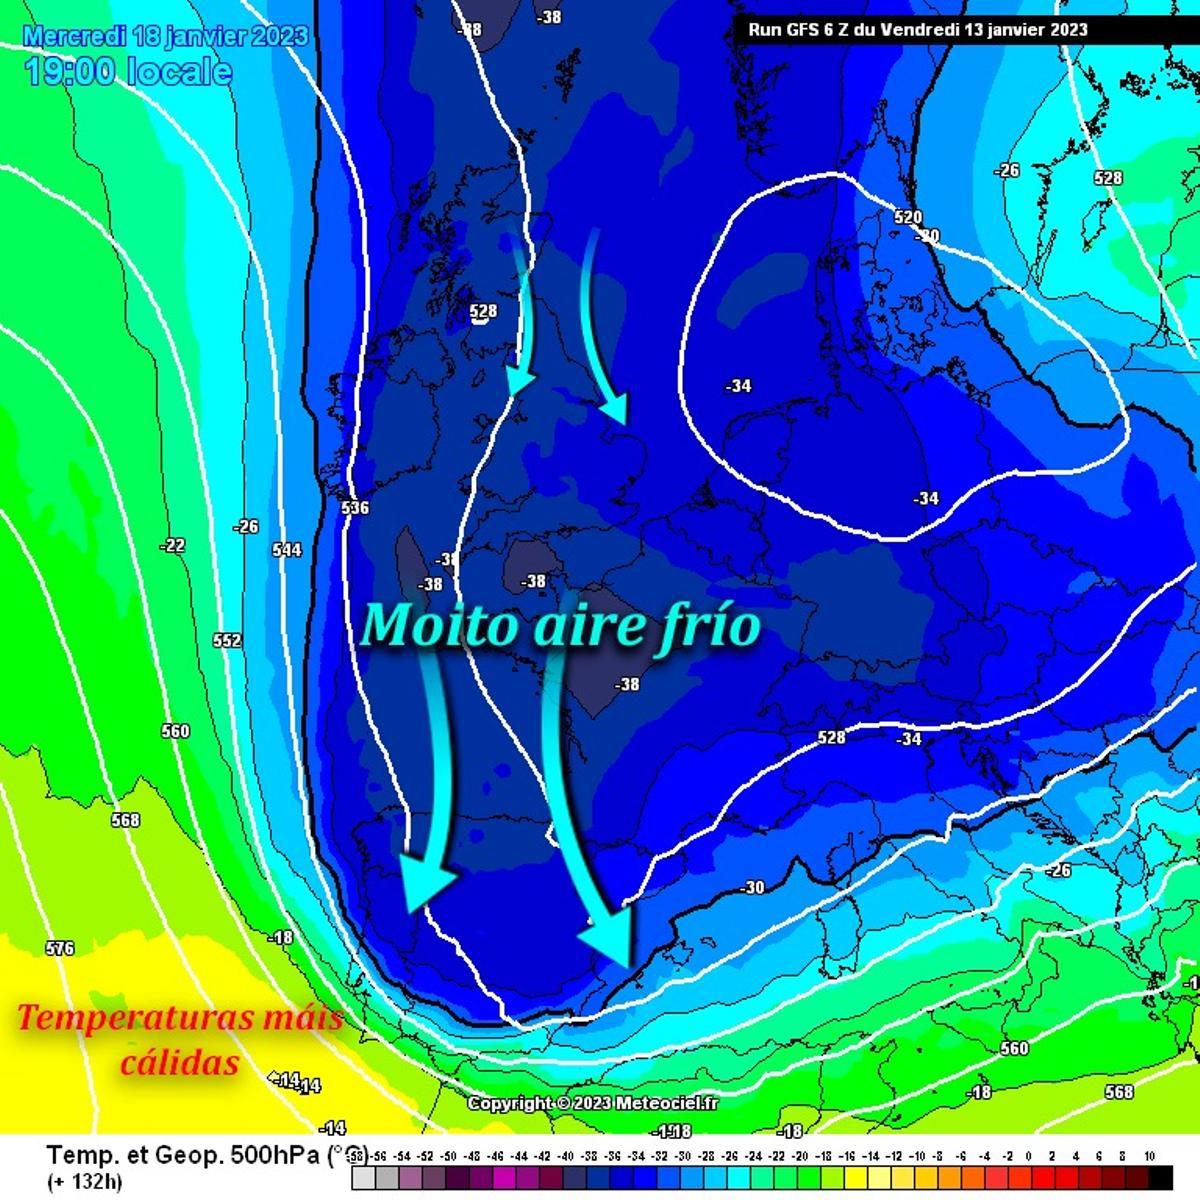 Mapa del frío compartido por el experto David Domínguez